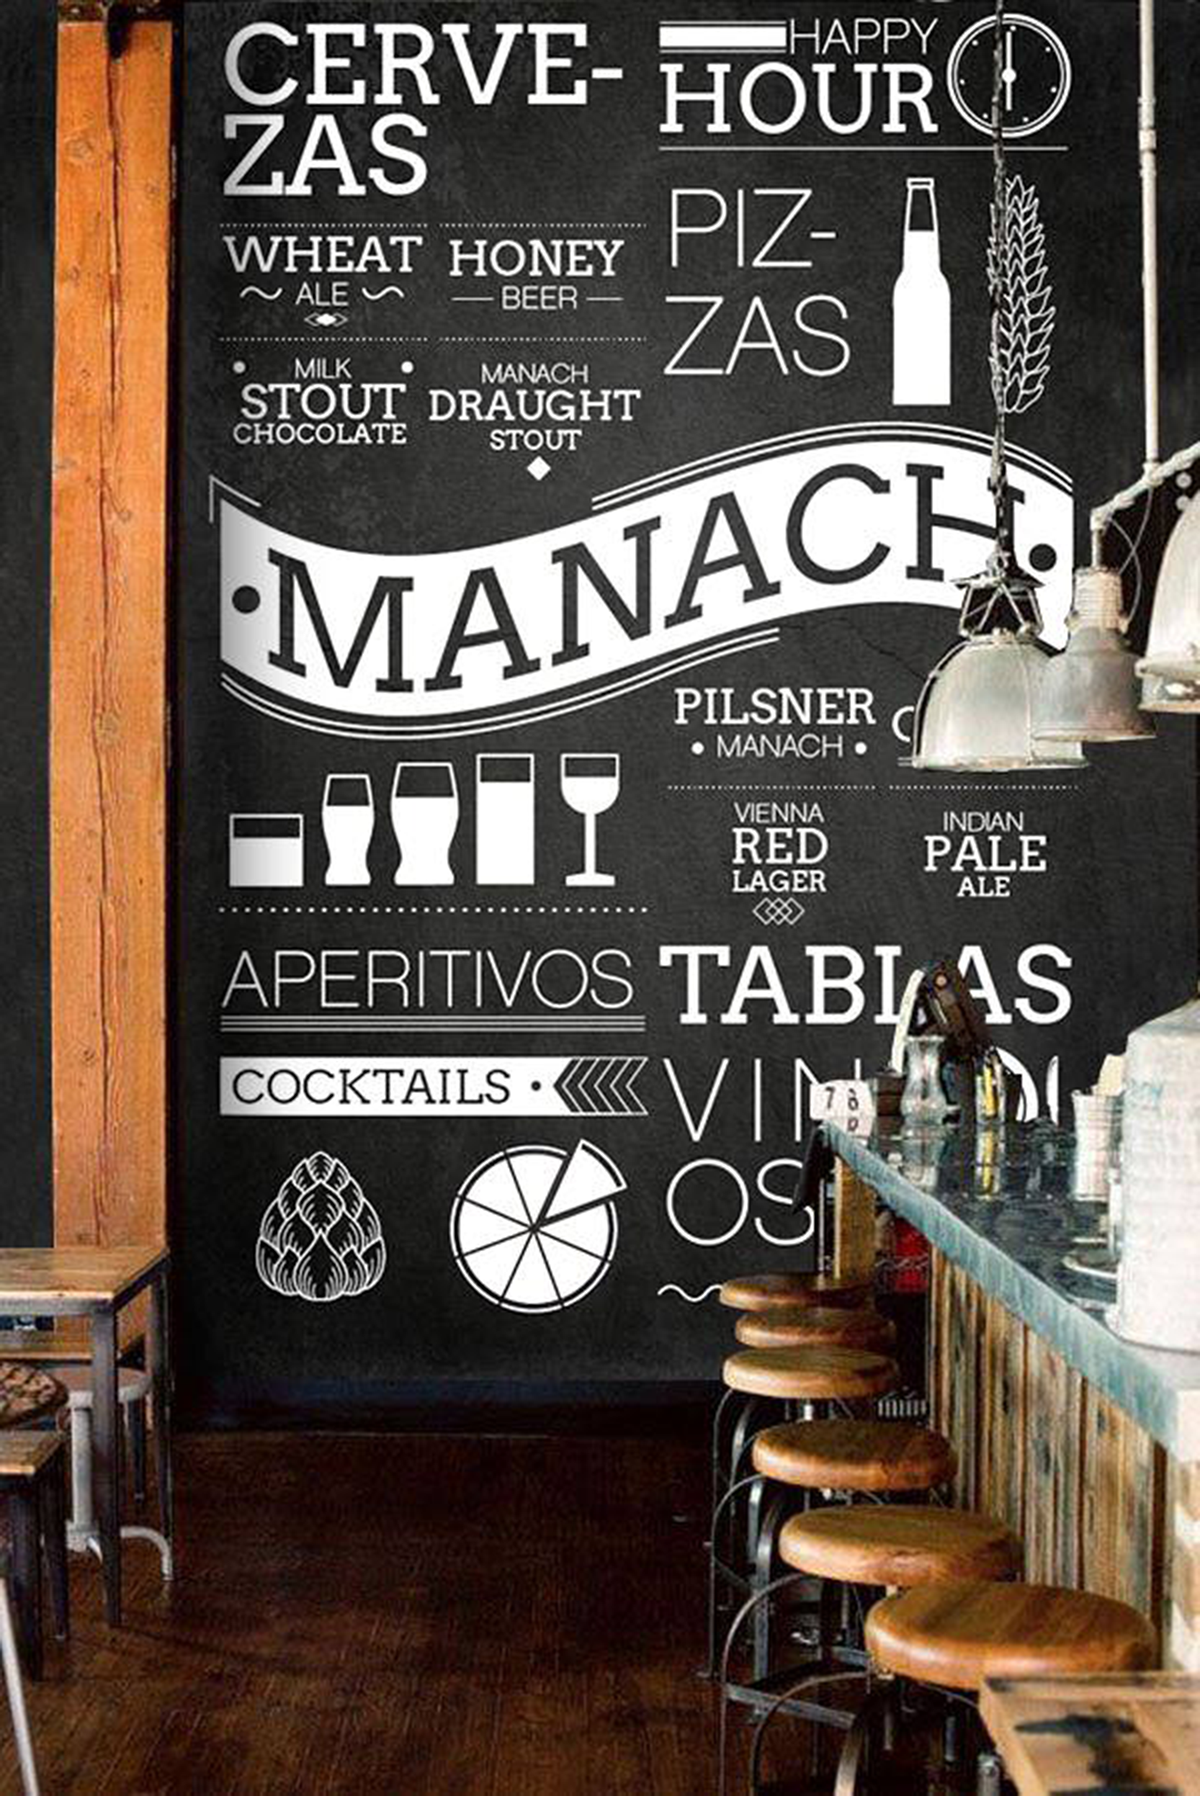 #Branding #Diseño de marca #menu #beer #Cerveza #artesanal #Logo #manual de uso #pizarra #diseño de entorno